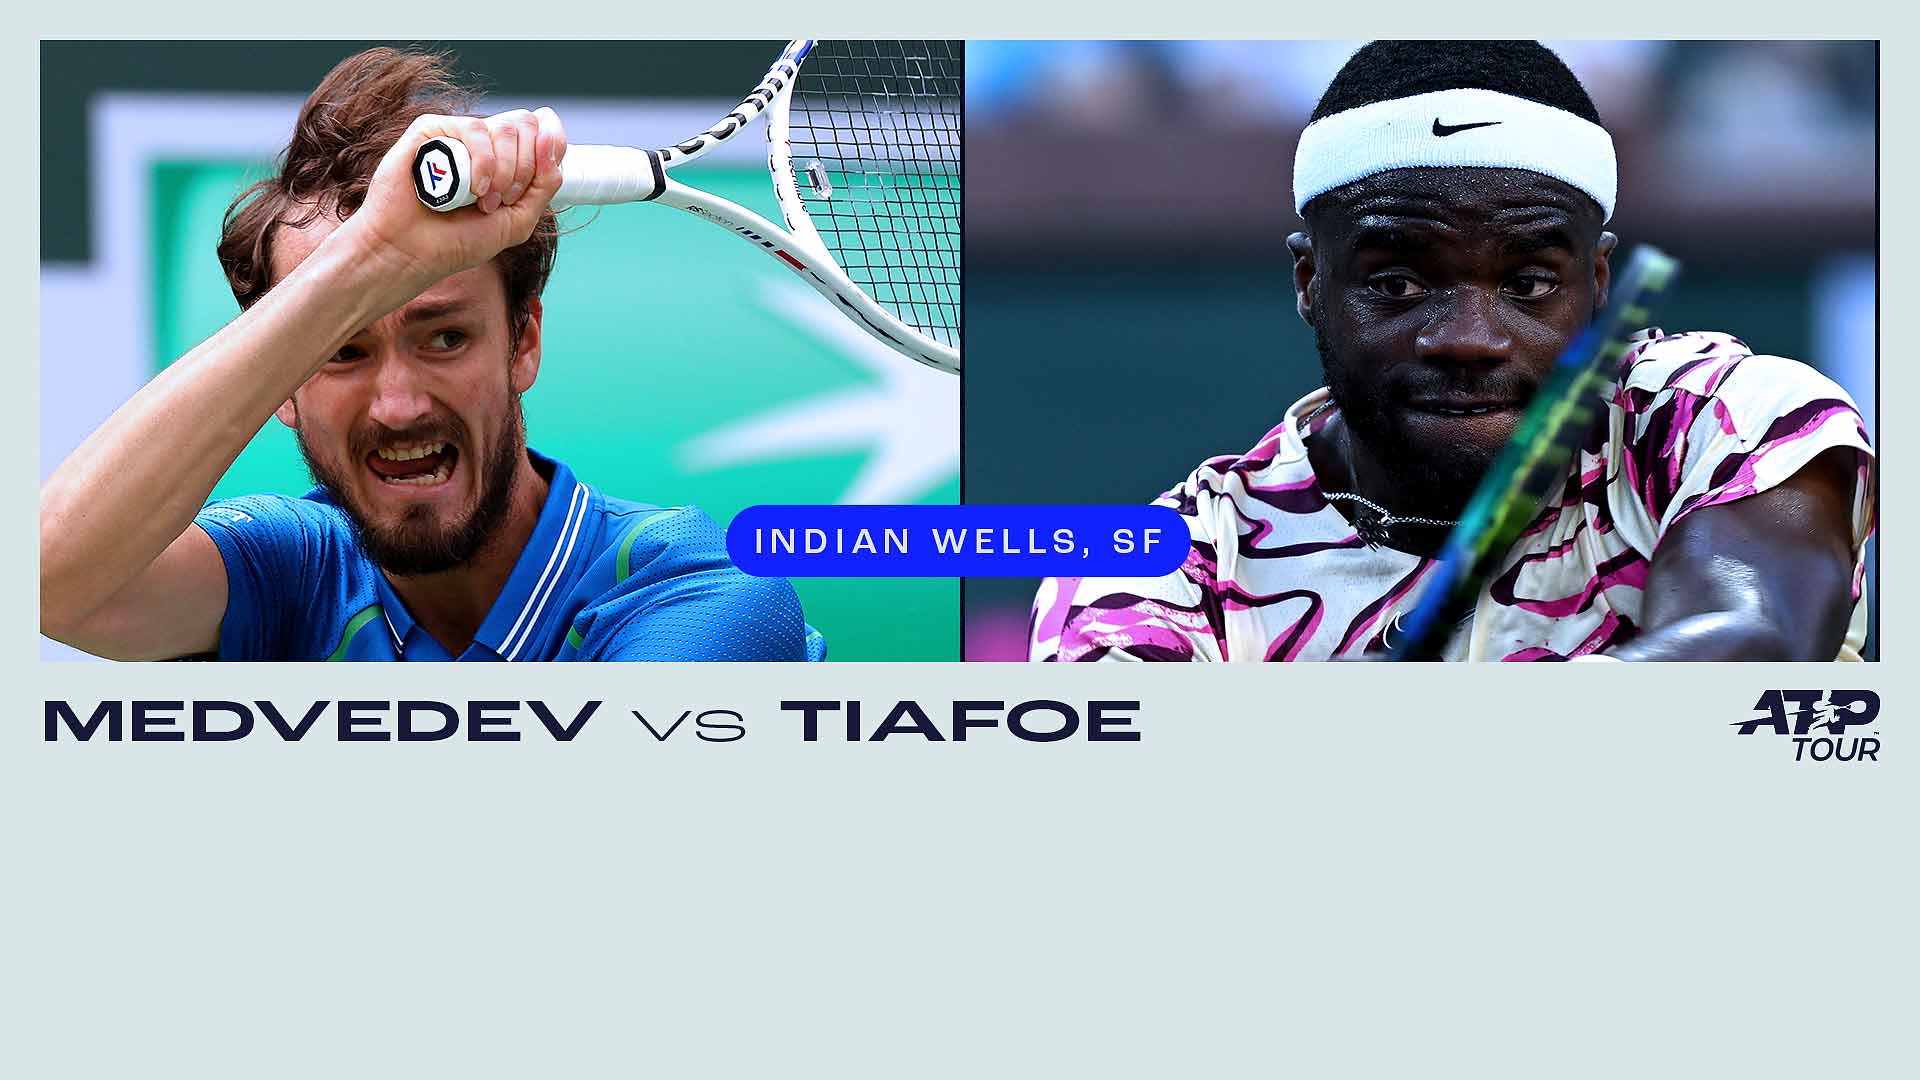 Daniil Medvedev leads Frances Tiafoe 4-0 in their ATP Head2Head series.